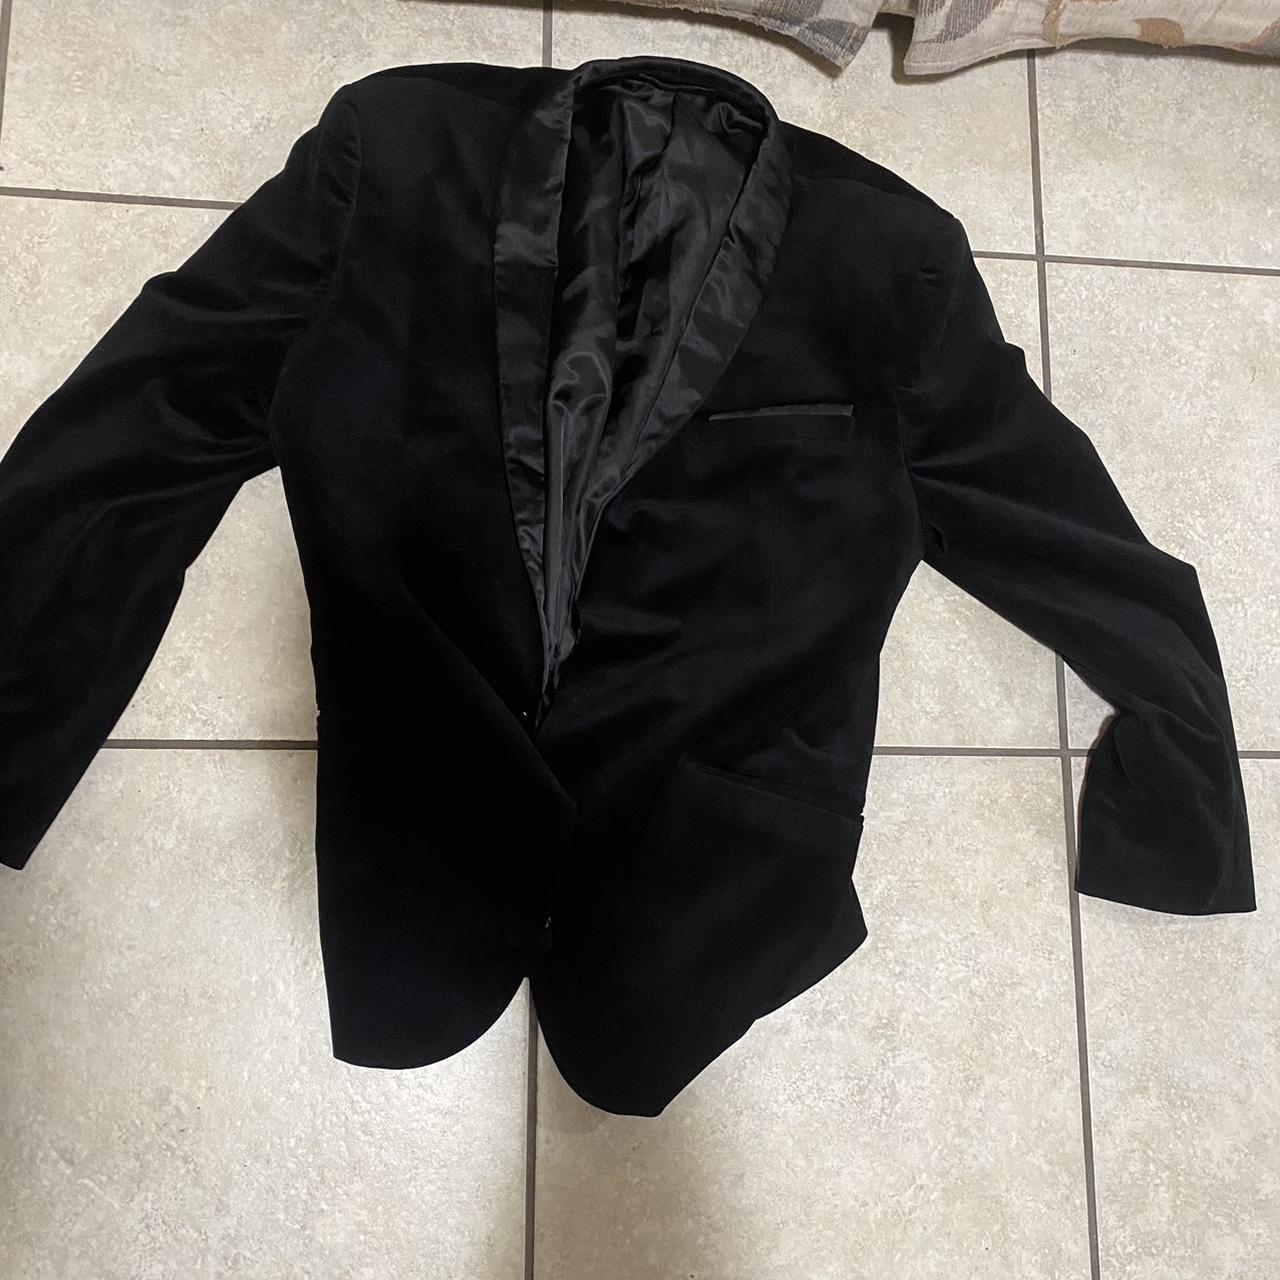 vitarelli velvet black slim fit blazer - Depop